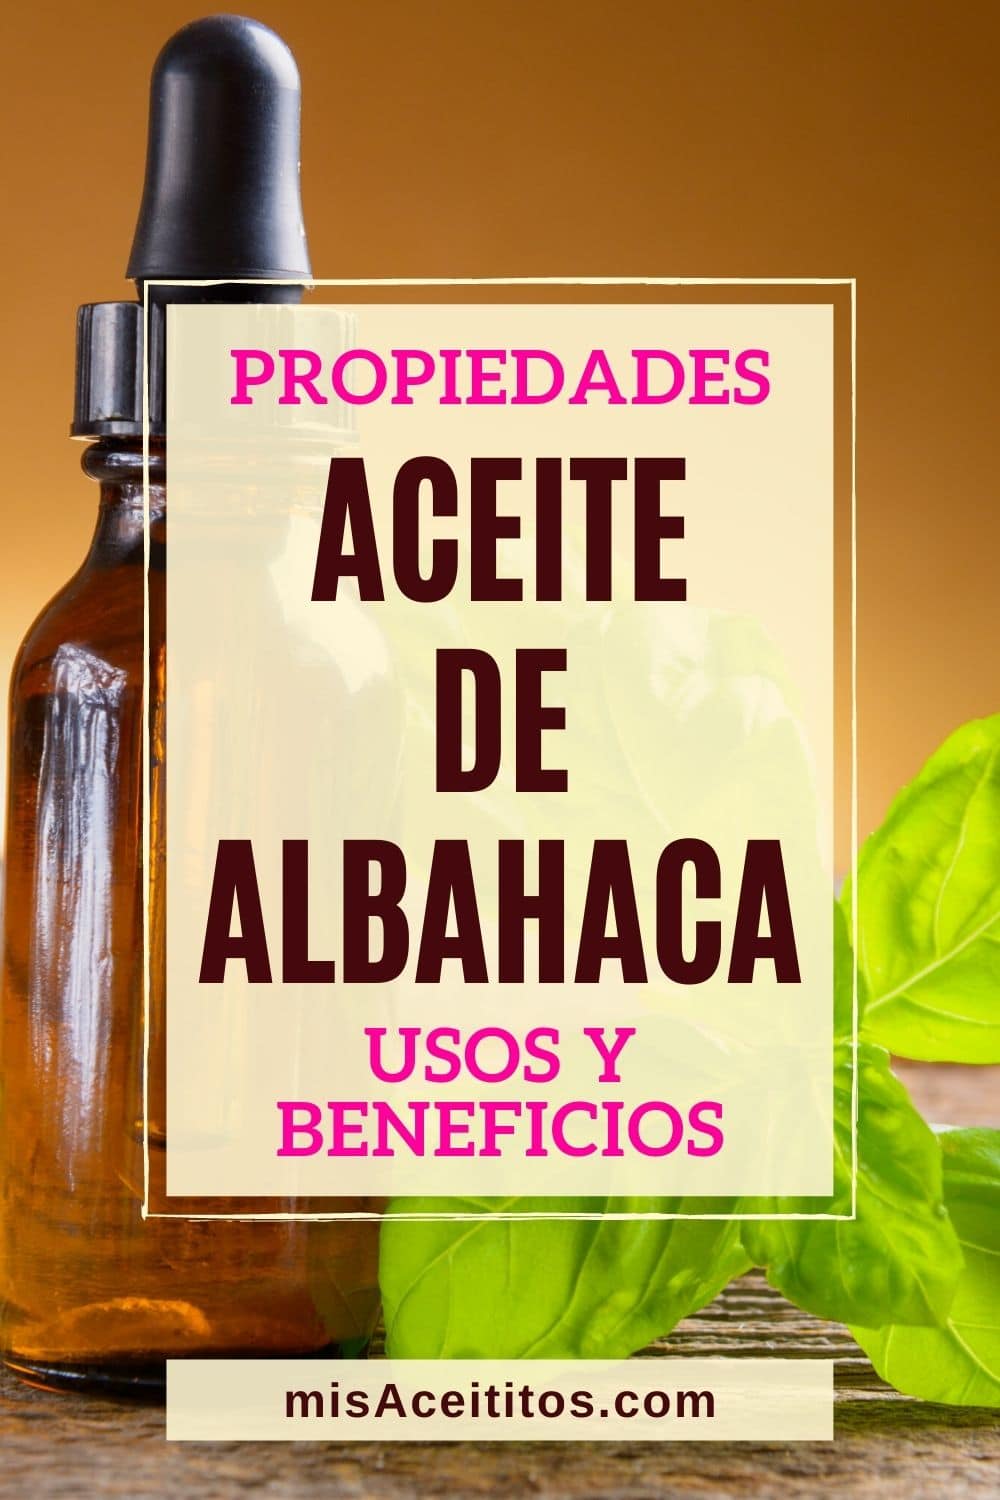 Propiedades, beneficios y usos del aceite esencial de albahaca.